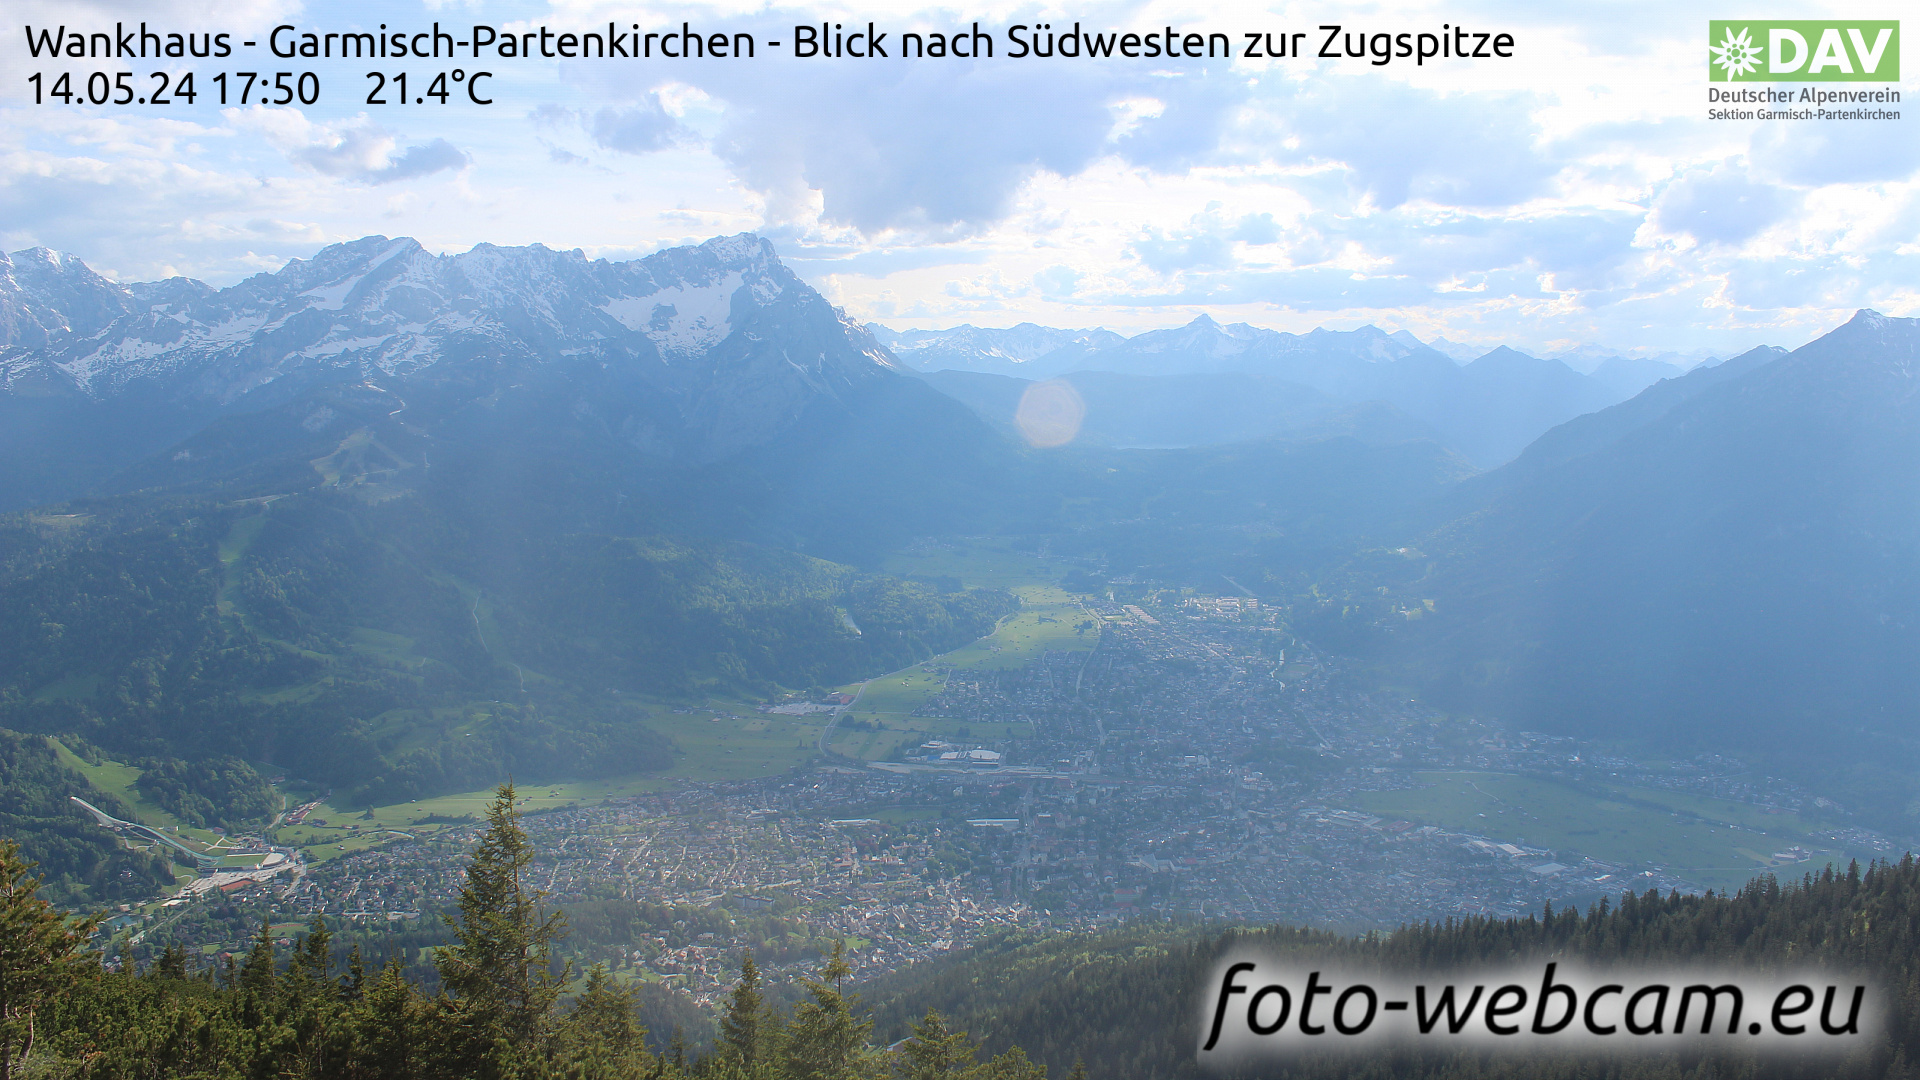 Garmisch-Partenkirchen Wed. 17:51